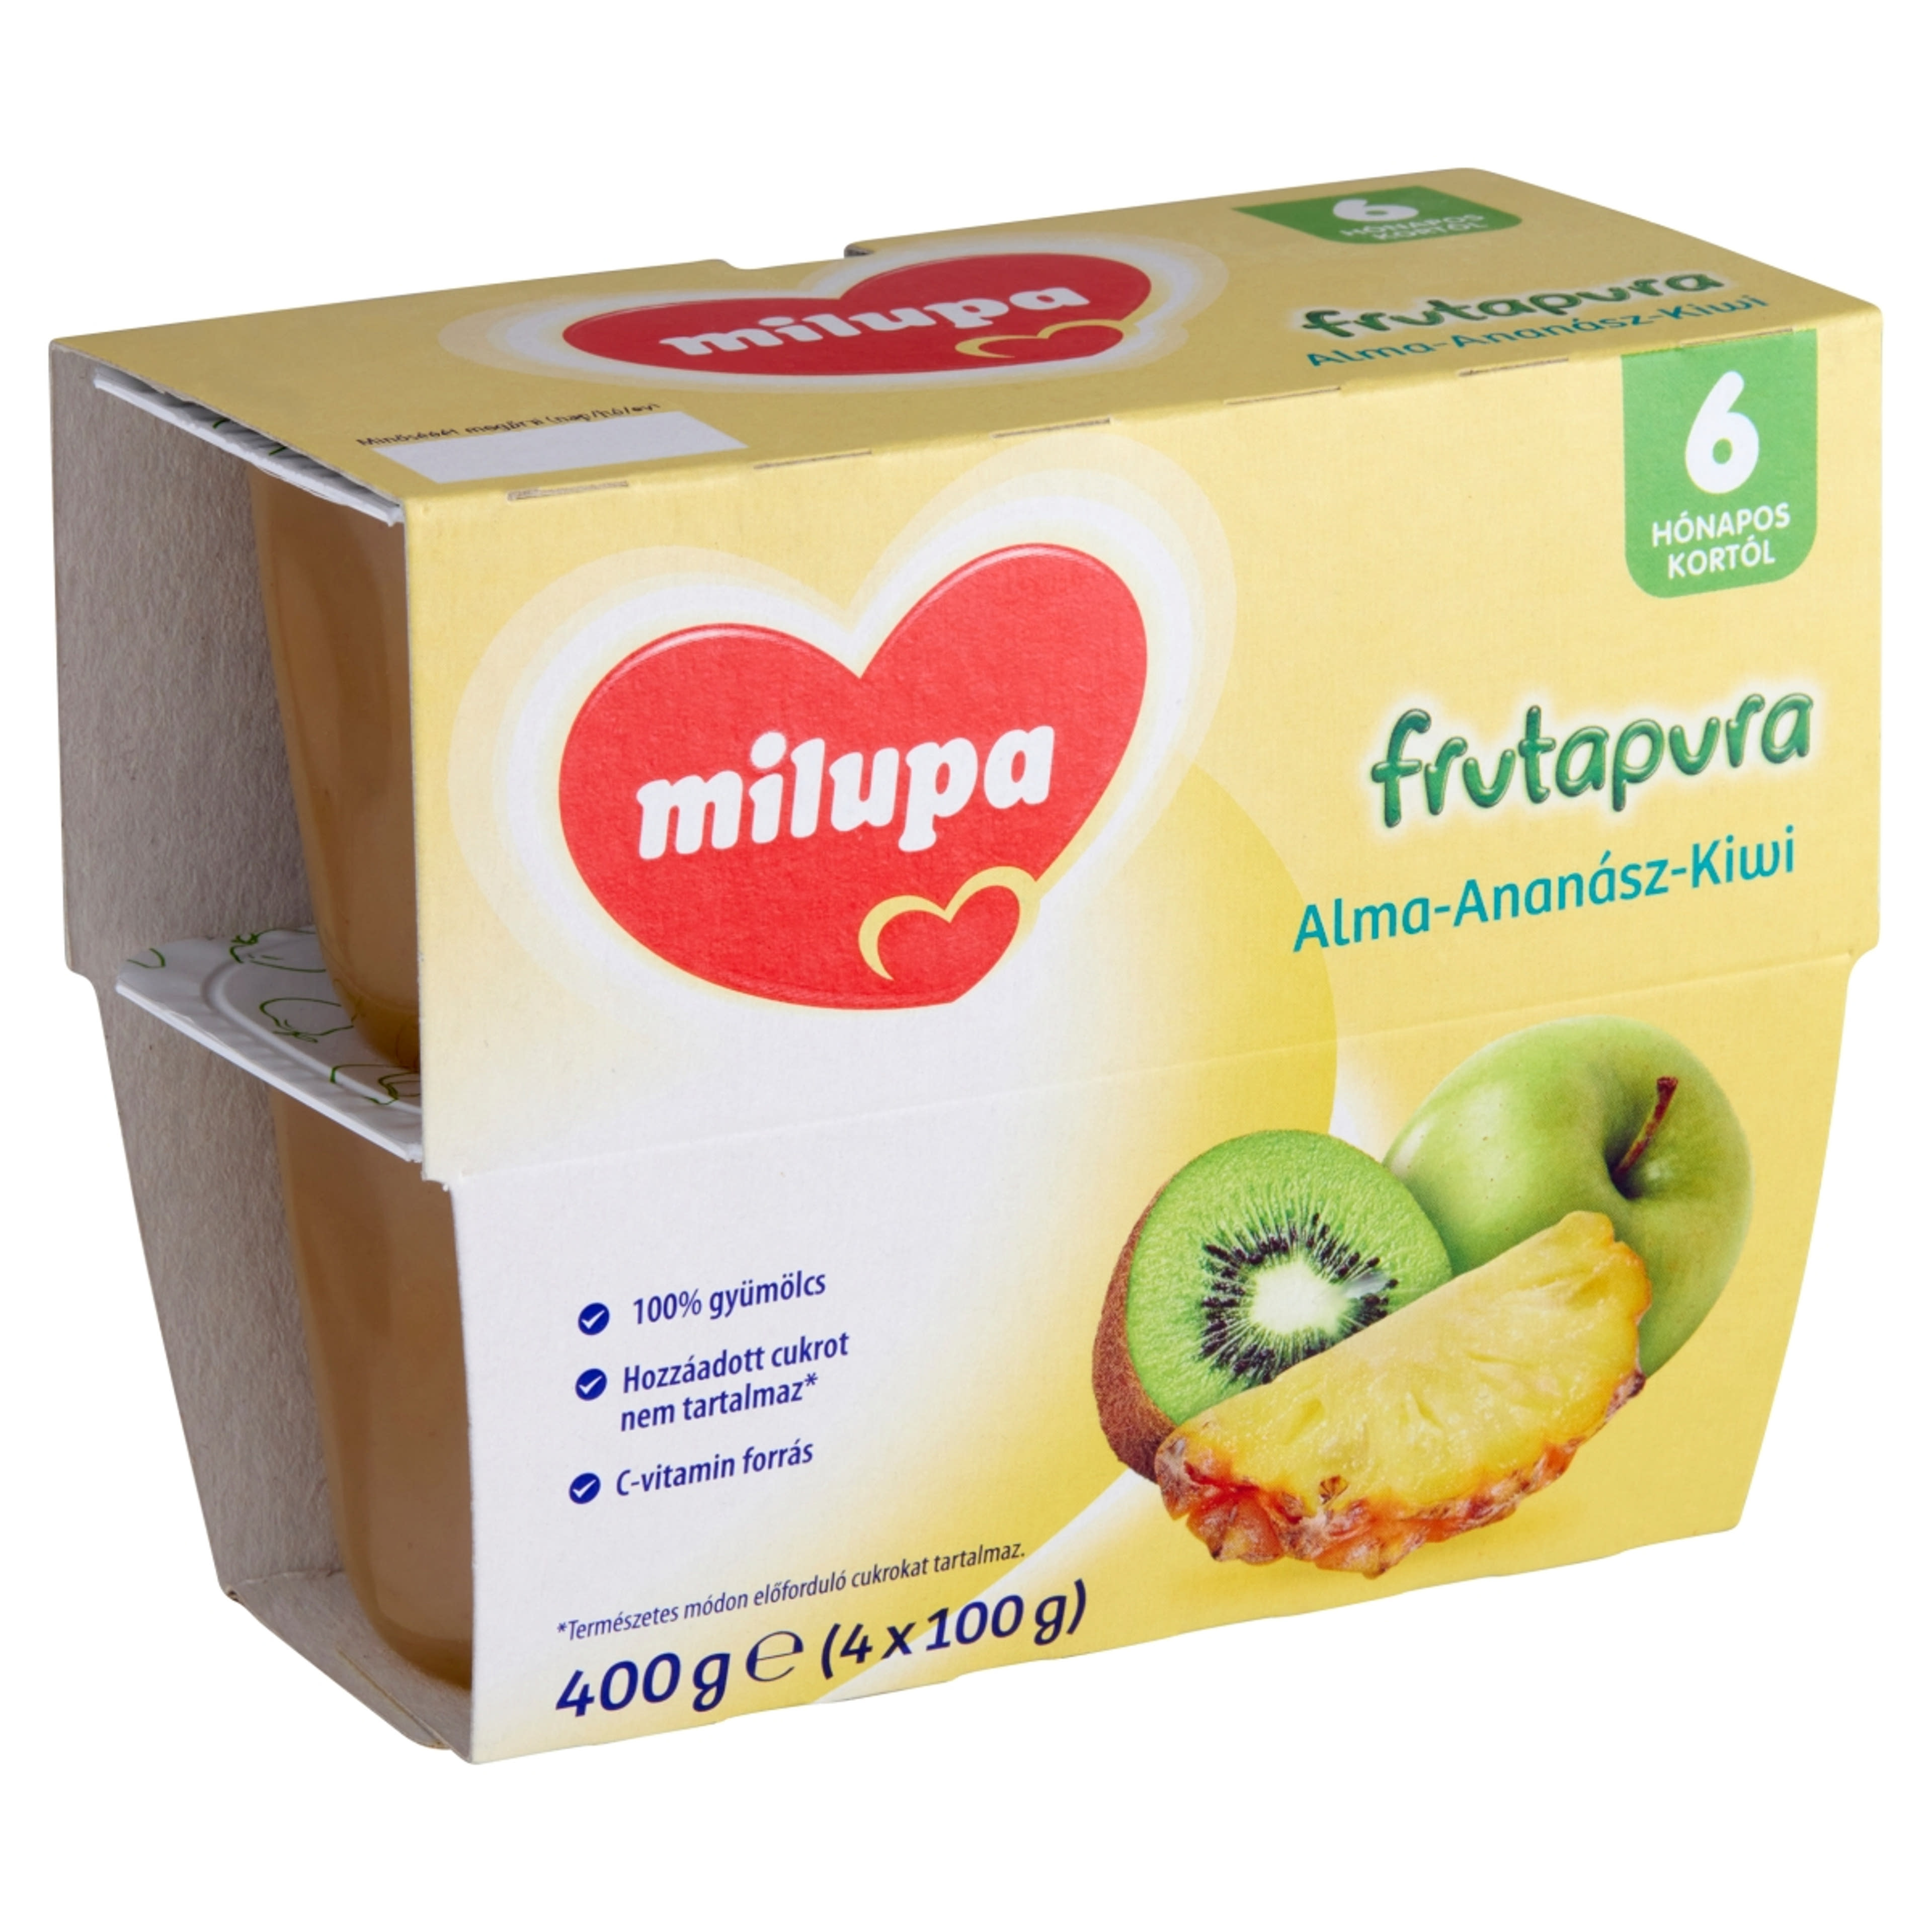 Milupa frutapura alma-ananász-kiwi 6 hónapos kortól 4*100g - 400 g-2